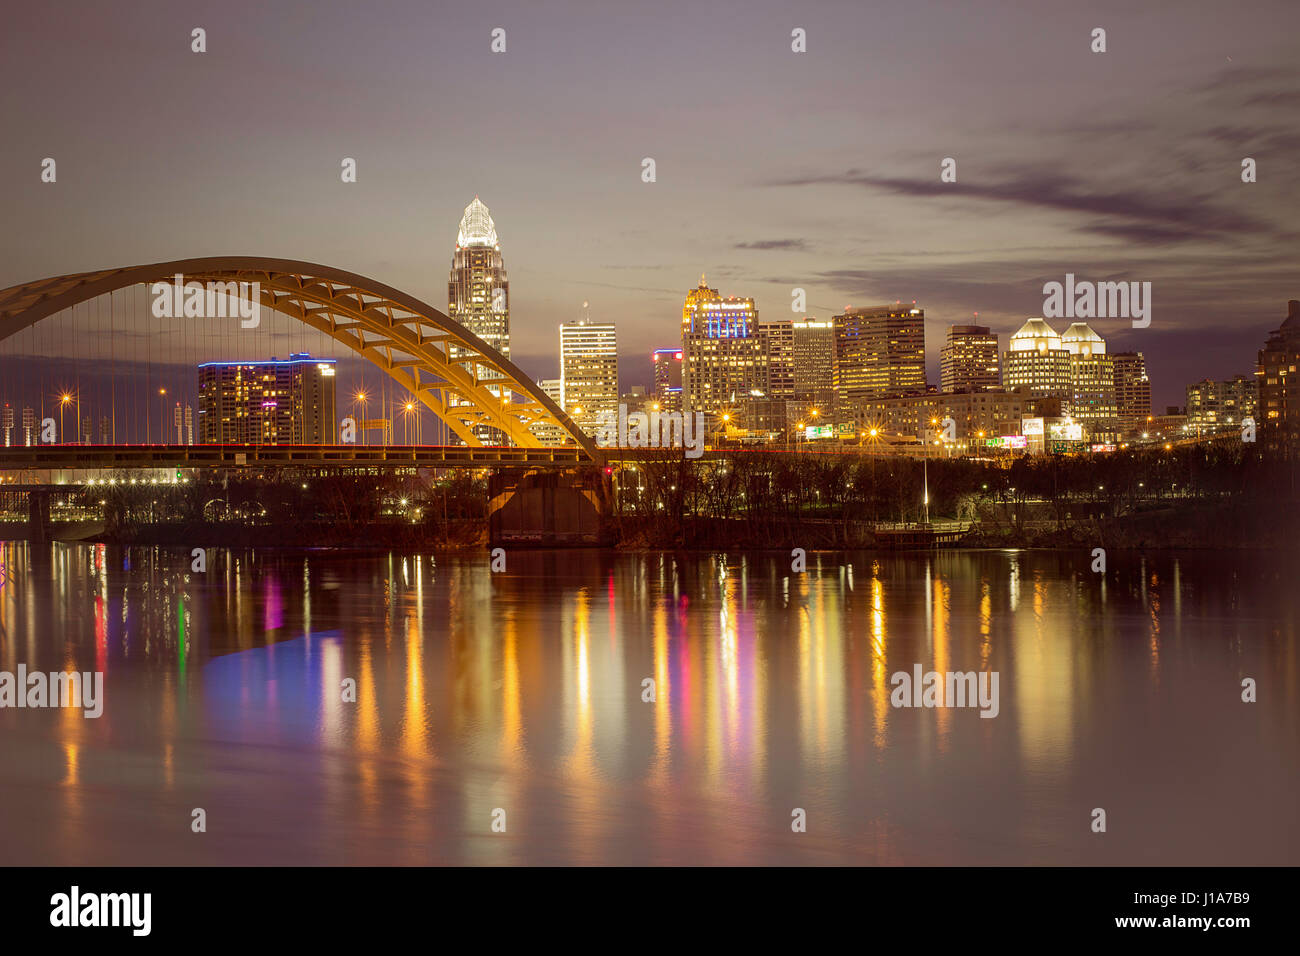 Fotografia di Cincinnati, Ohio, Stati Uniti d'America. Immagine appena dopo il tramonto. Il fiume Ohio è in primo piano e il Dan C Barba bridge è a sinistra. Foto Stock